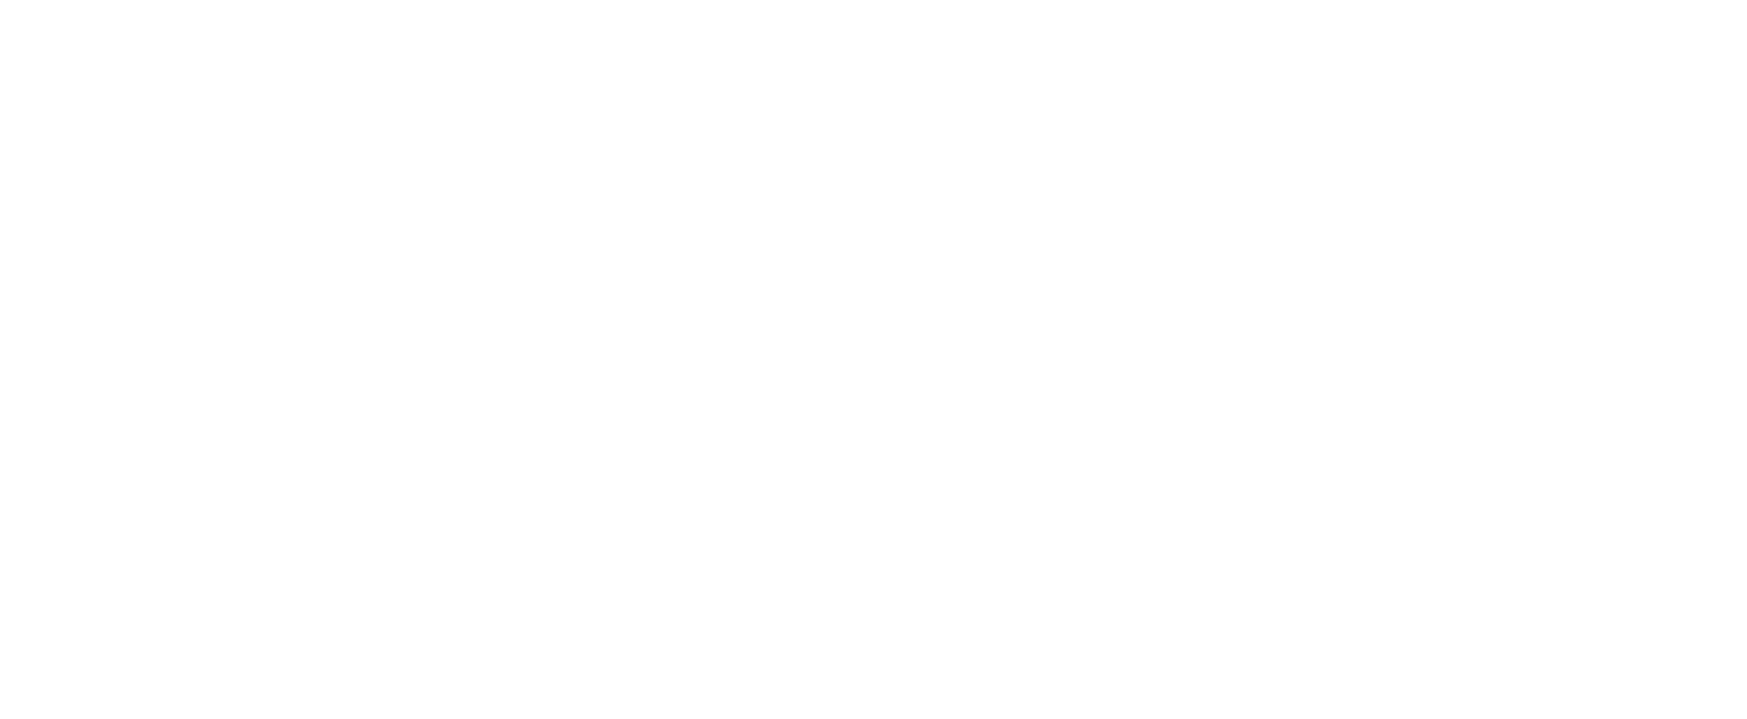 Ogden Trails Network - Home